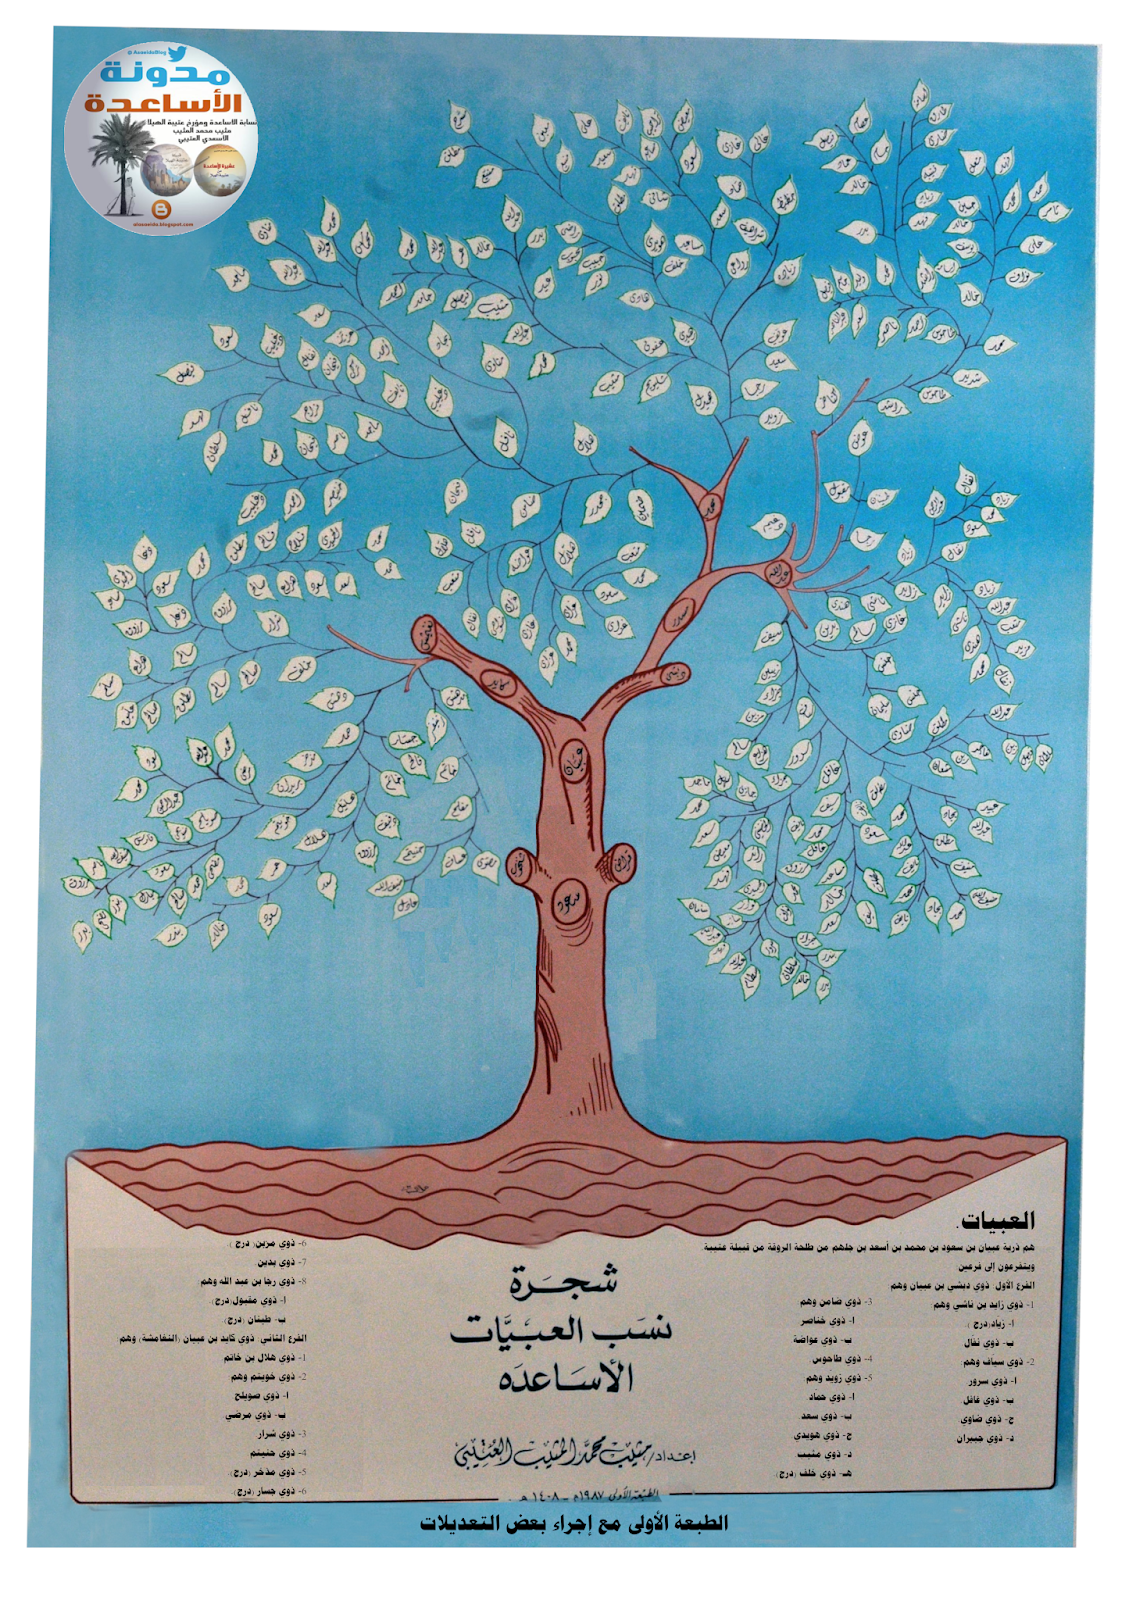 تفرعات الأساعدة شجرة العبيات الطبعة الأولى 1408 هـ 1987م